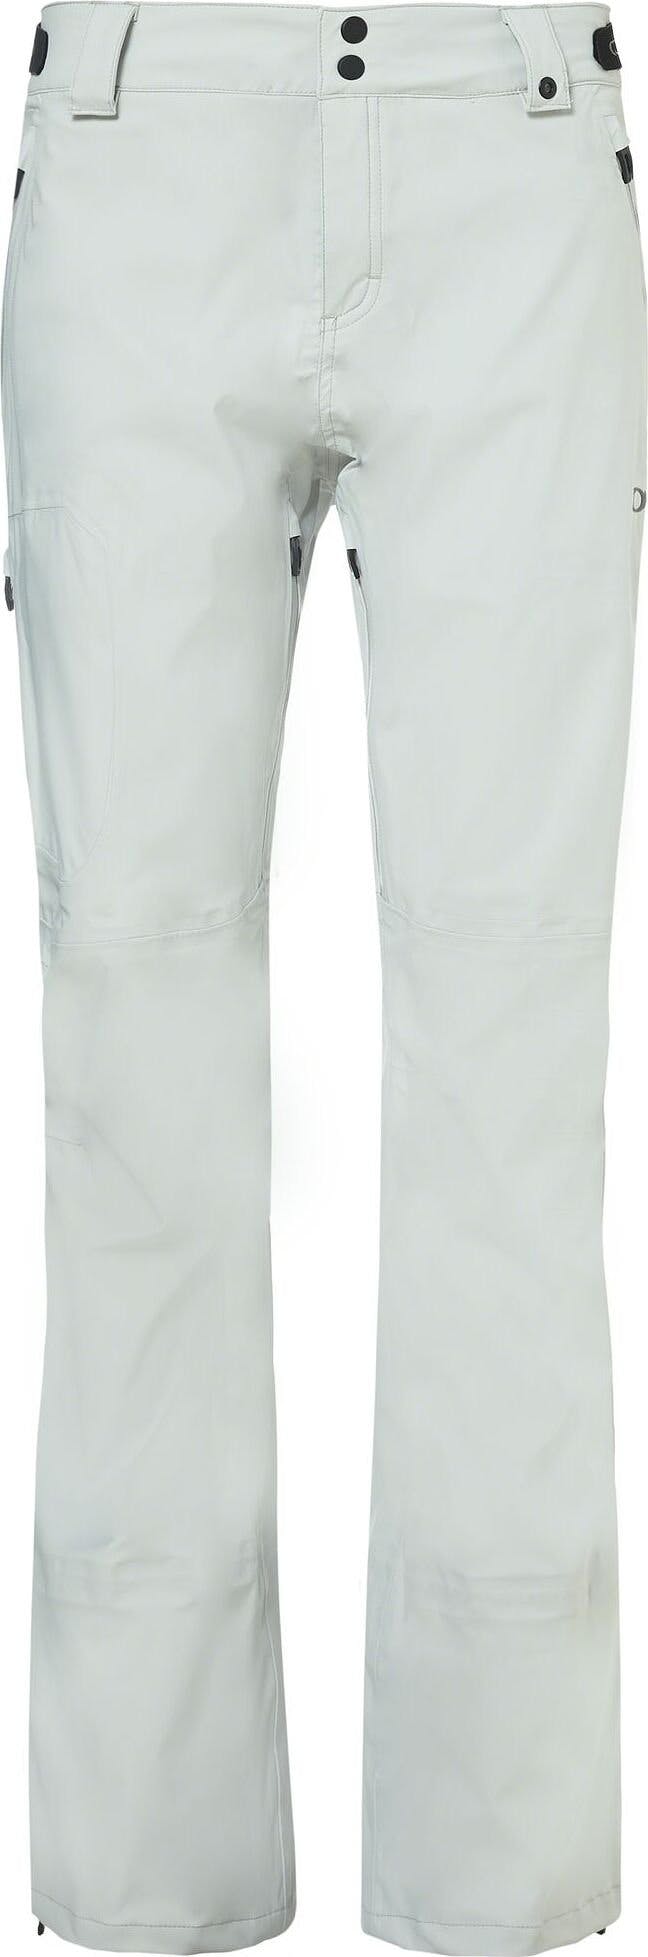 Numéro de l'image de la galerie de produits 1 pour le produit Pantalon Snow Shell 15K/ 3L - Femme